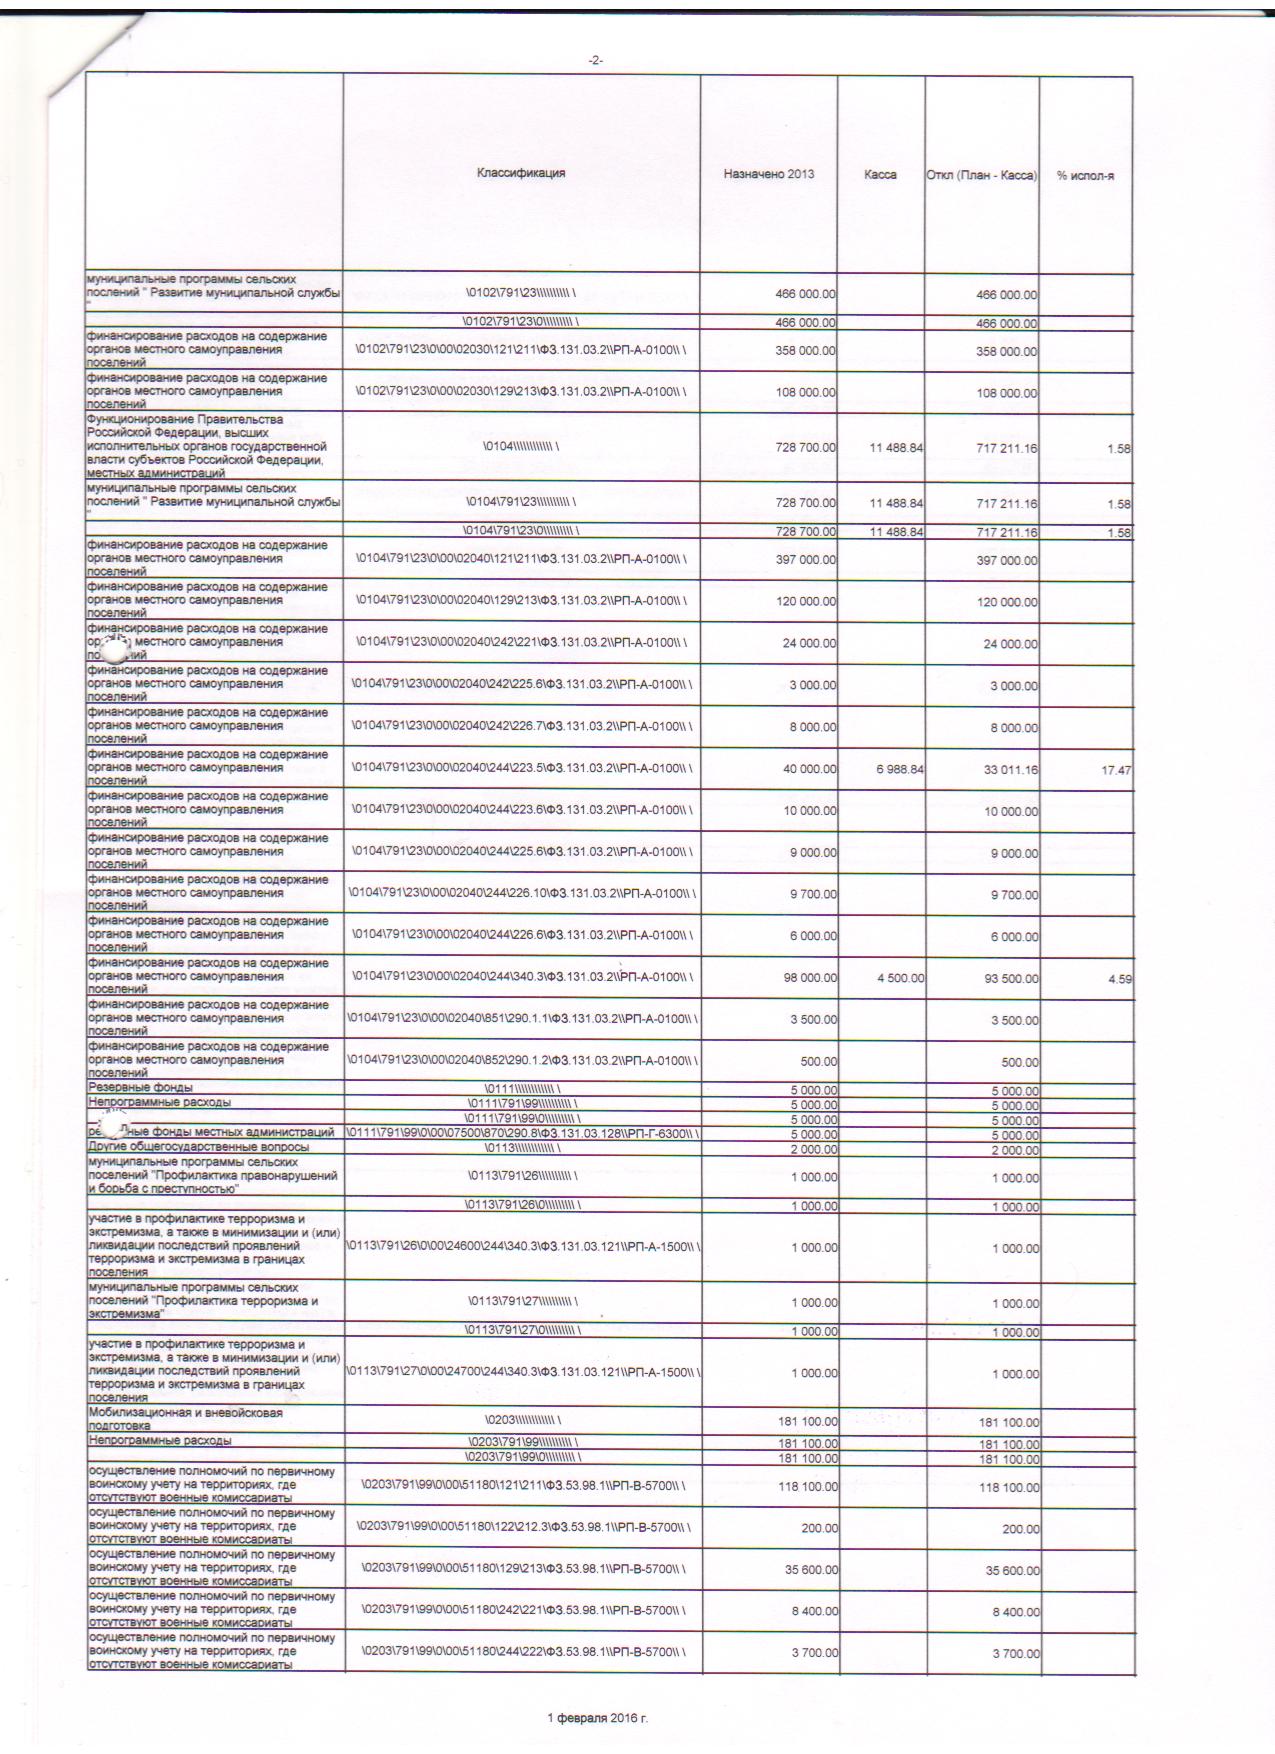 месячный отчет об исполнении бюджета на 01.02.2016г. 001